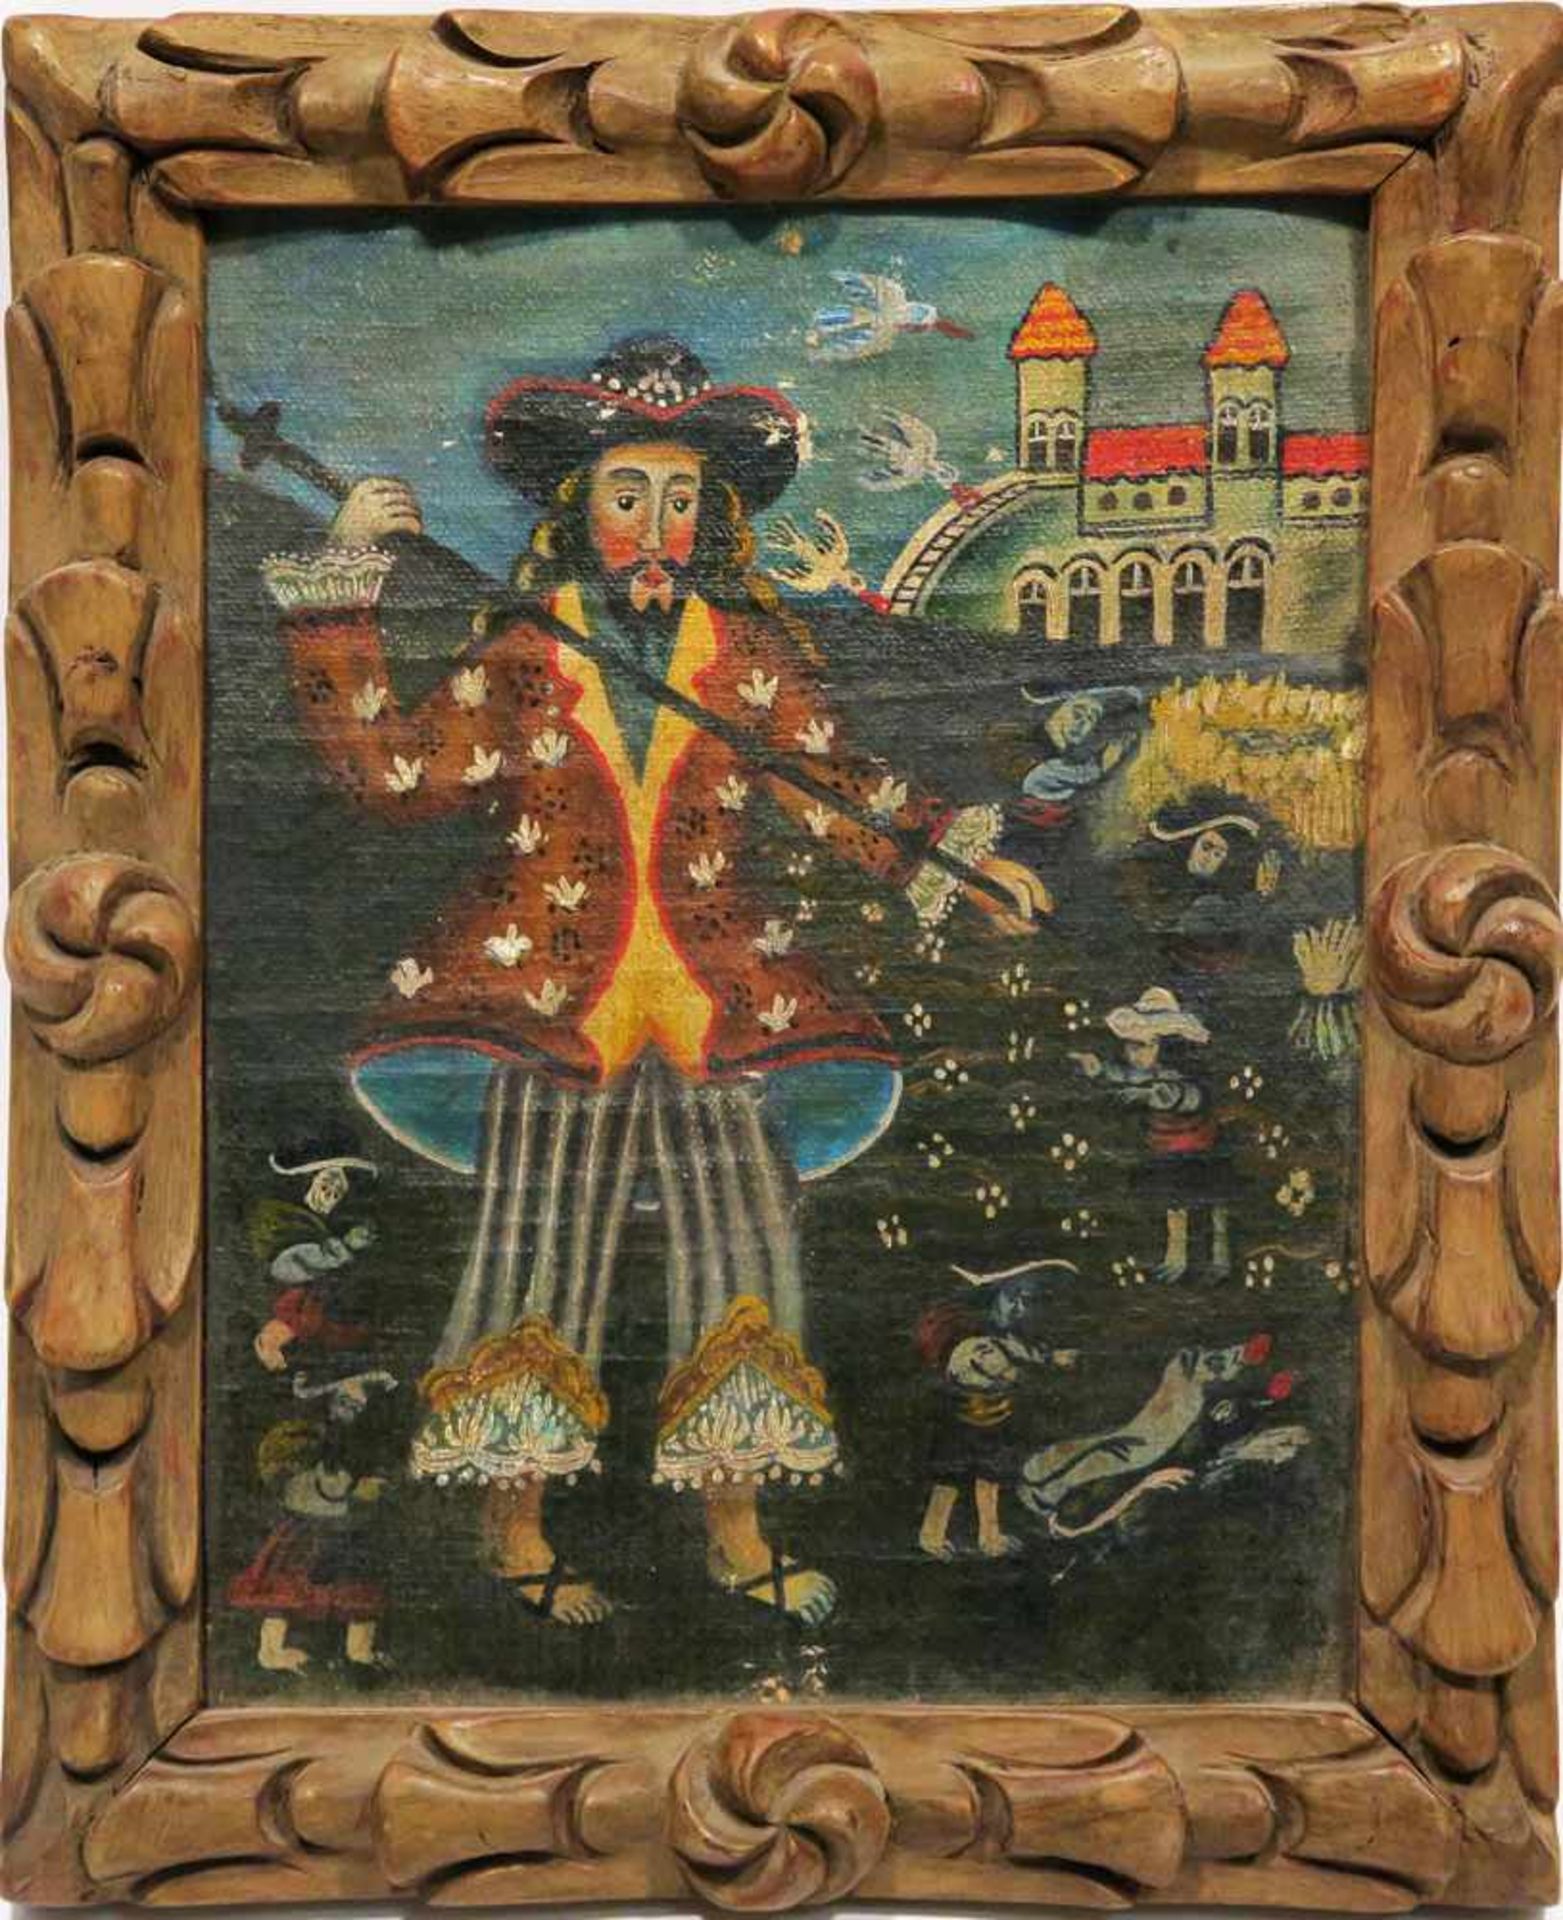 Südamerika Darstellung einer südamerikanischen Legende (?) Öl/Lwd. 22,5 x 17,5 cm. Rest., besch. - Bild 2 aus 2